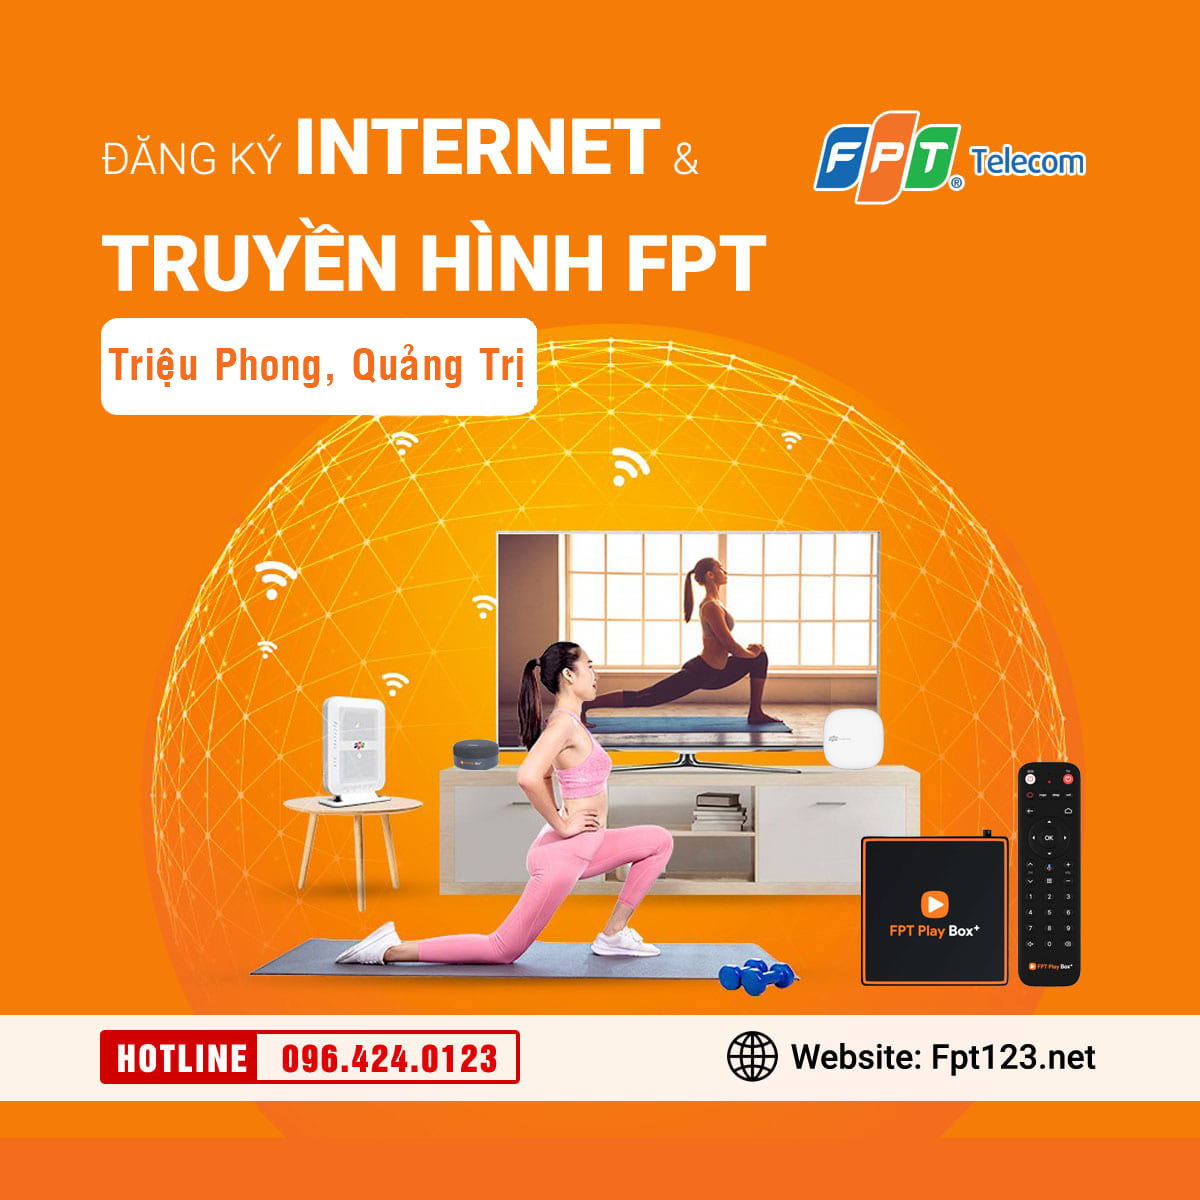 Đăng ký internet và truyền hình FPT Triệu Phong, Quảng Trị